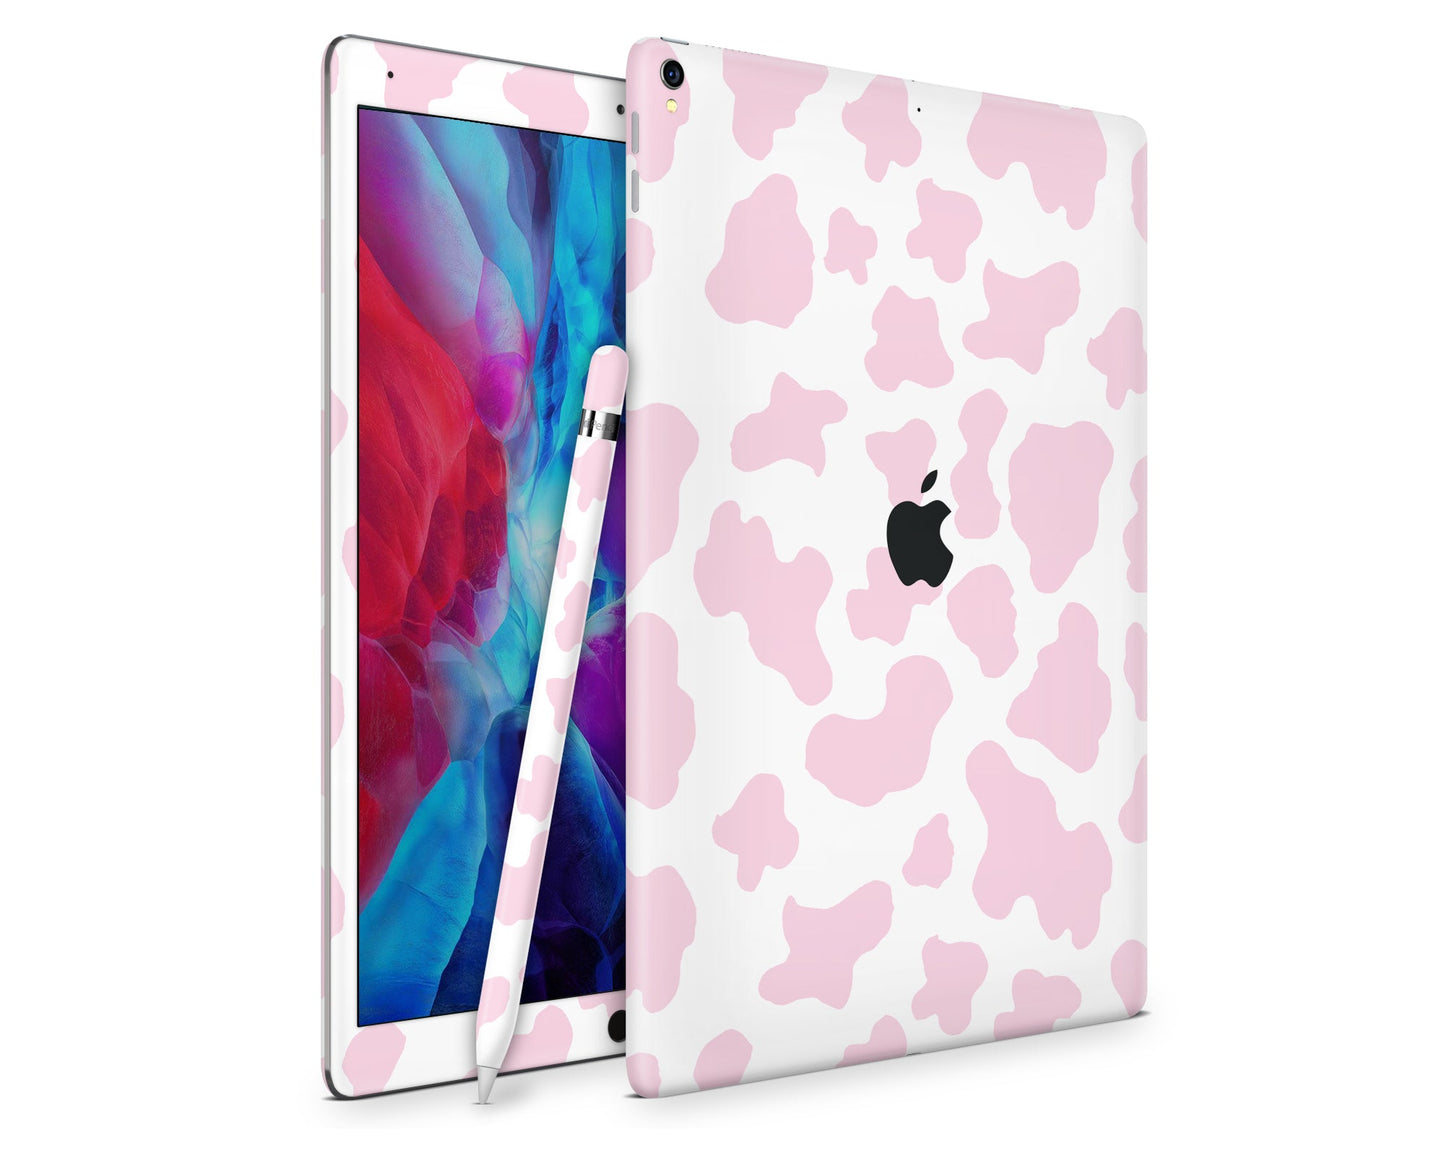 Lux Skins iPad Strawberry Milk Cow Print iPad Pro 12.9" Gen 5 Skins - Art Animals Skin